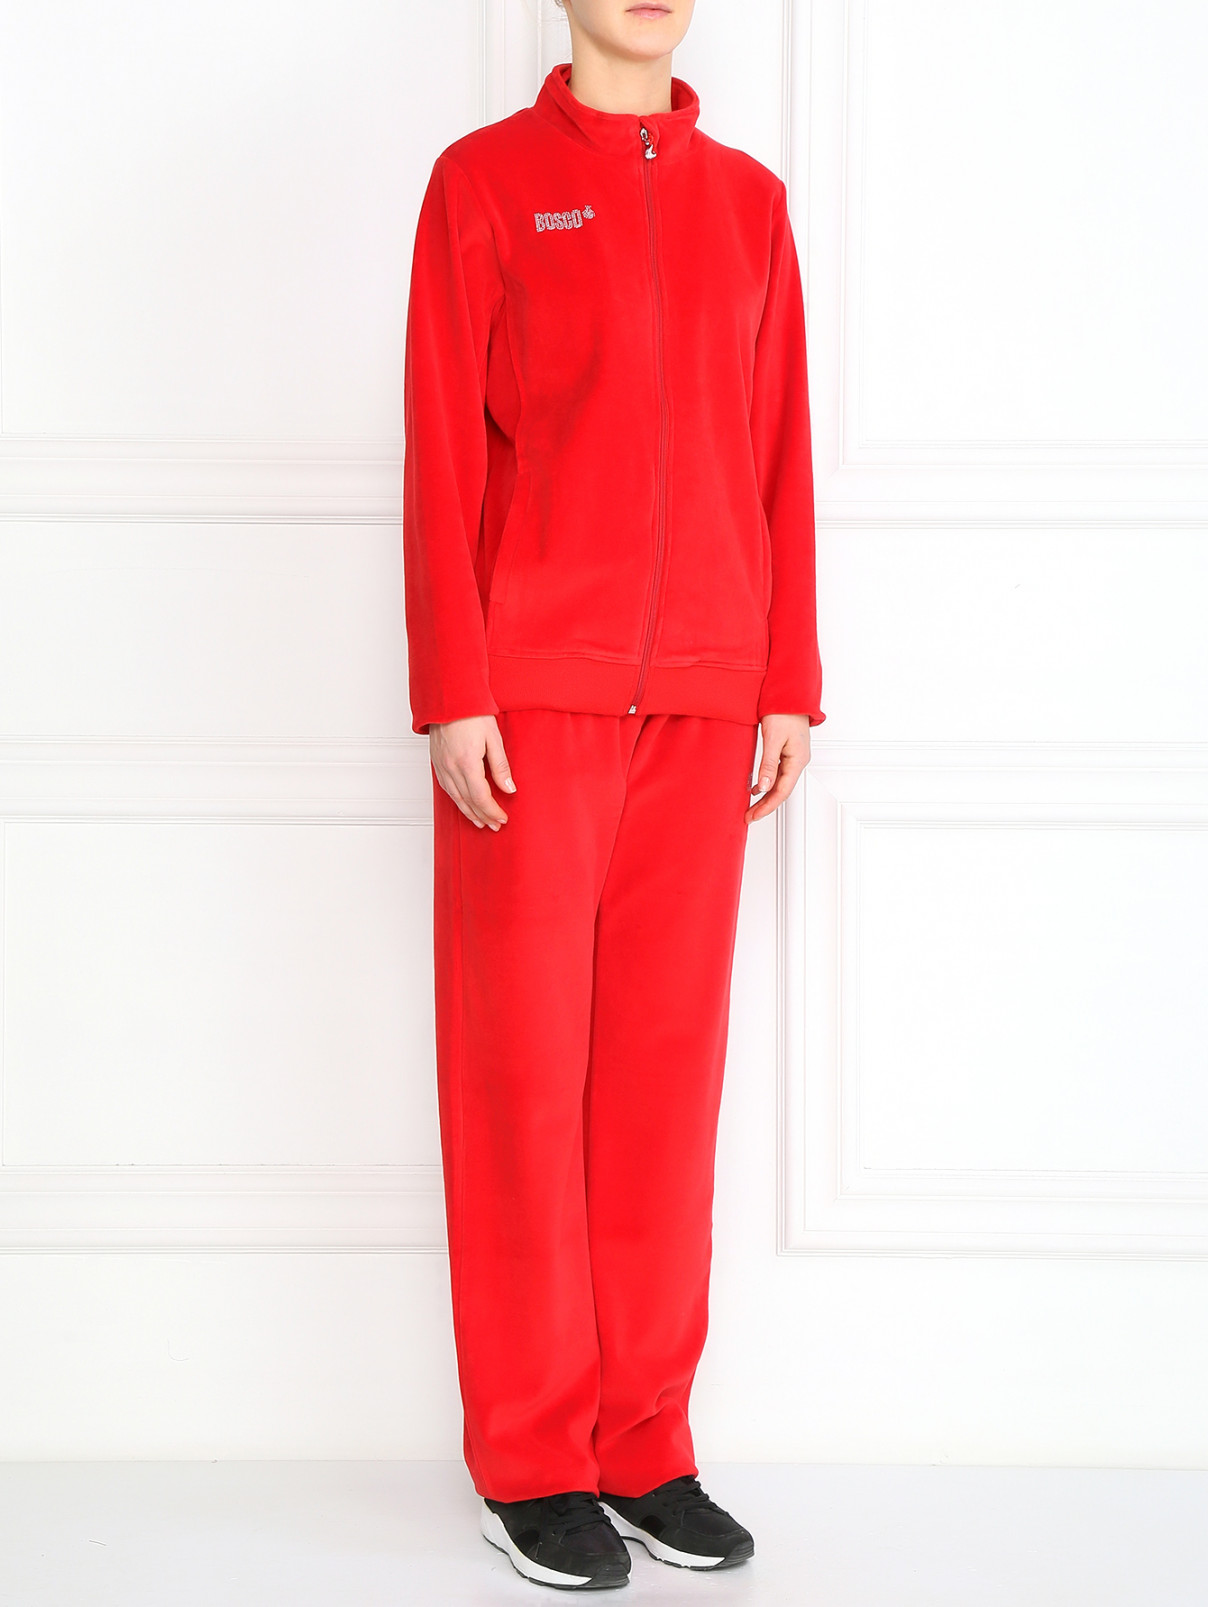 Спортивный костюм из хлопка BOSCO  –  Модель Общий вид  – Цвет:  Красный